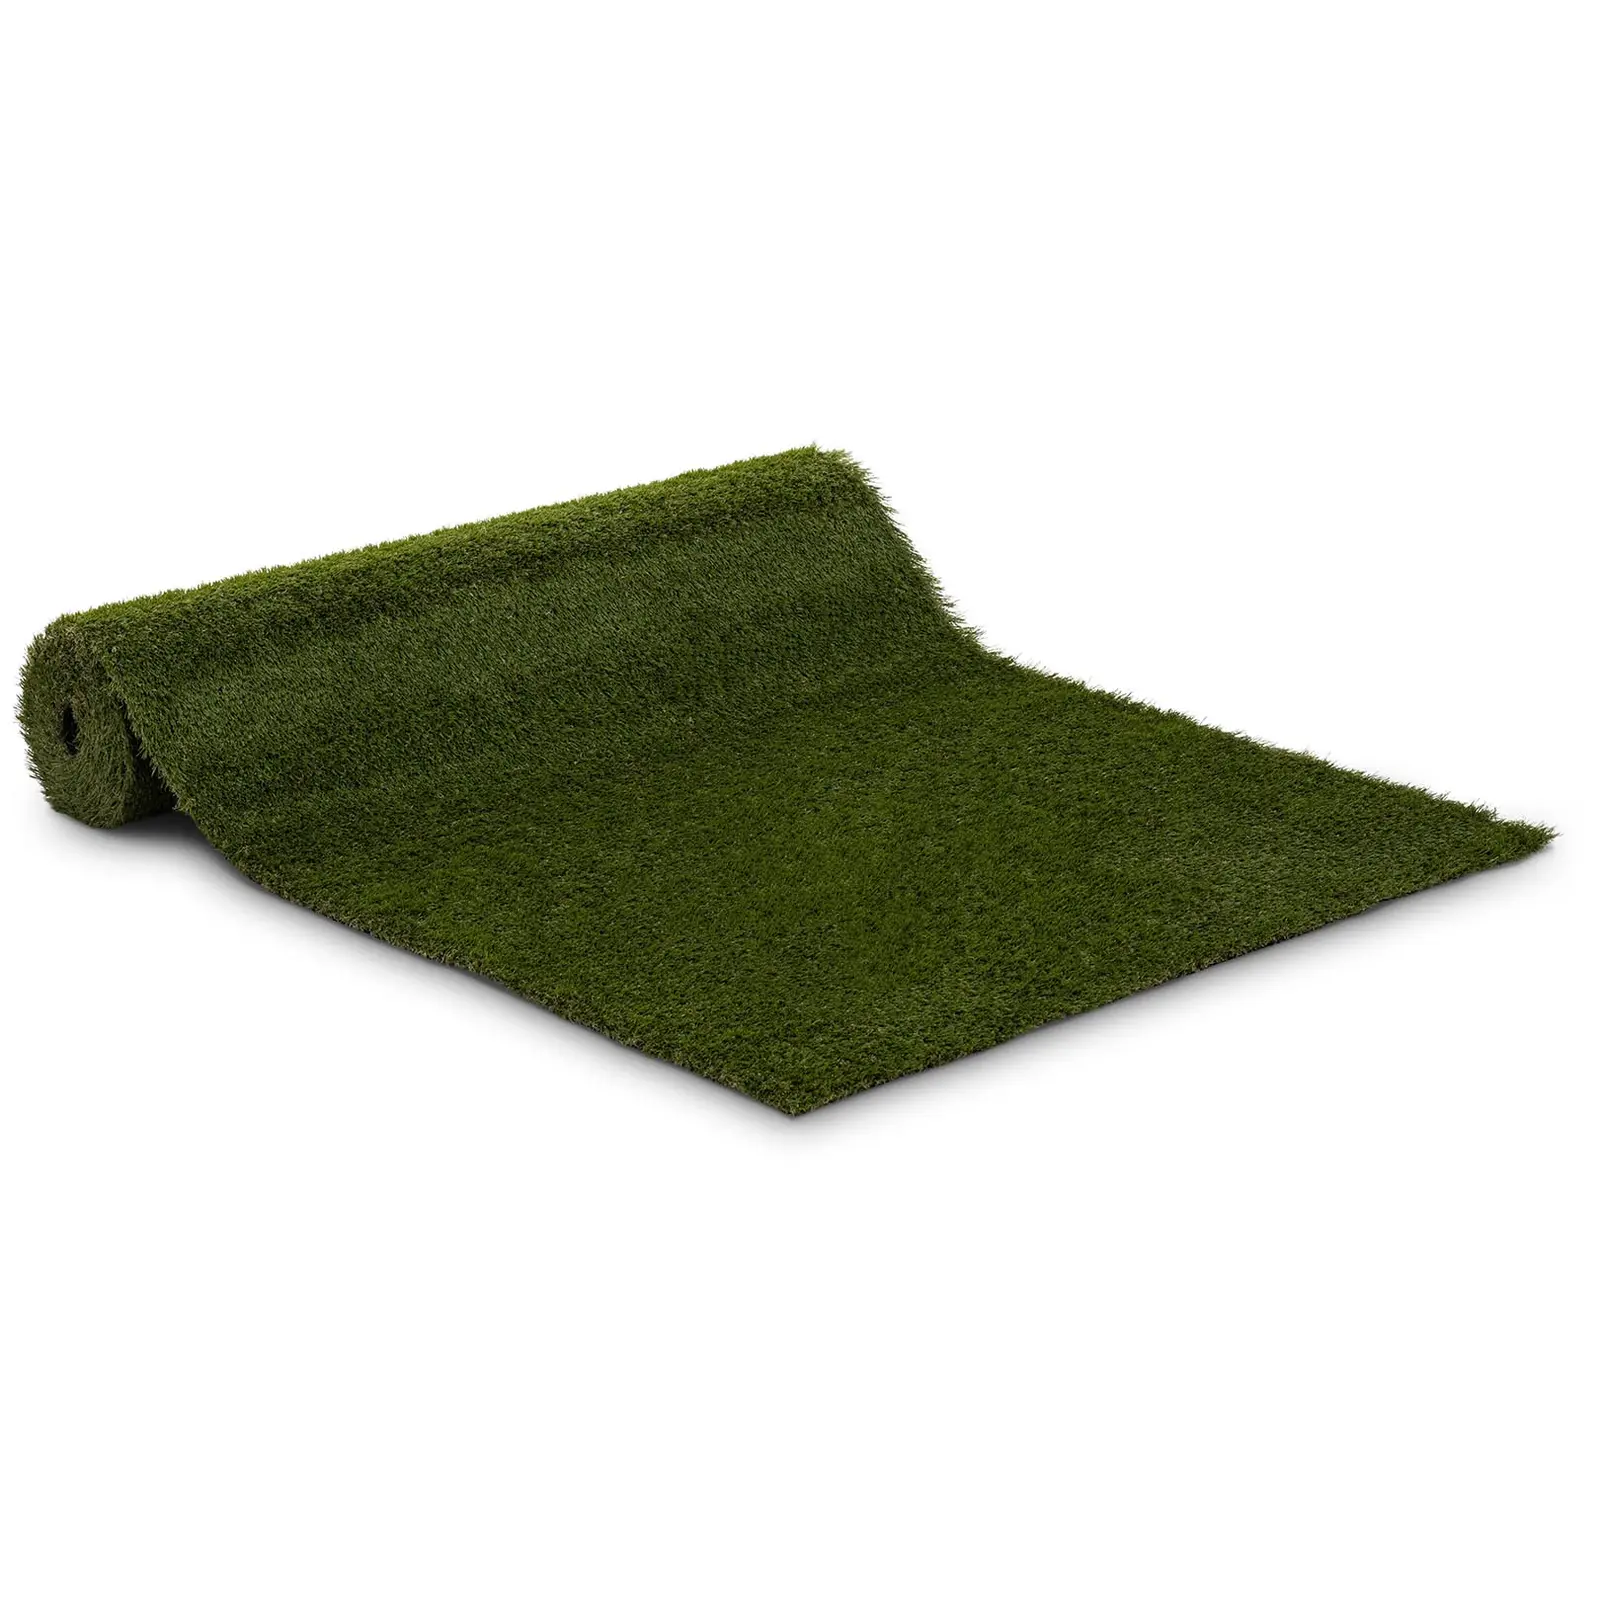 Umělý trávník 403 x 100 cm výška: 30 mm hustota stehů: 20/10 cm odolný proti UV záření - Umělé trávníky hillvert